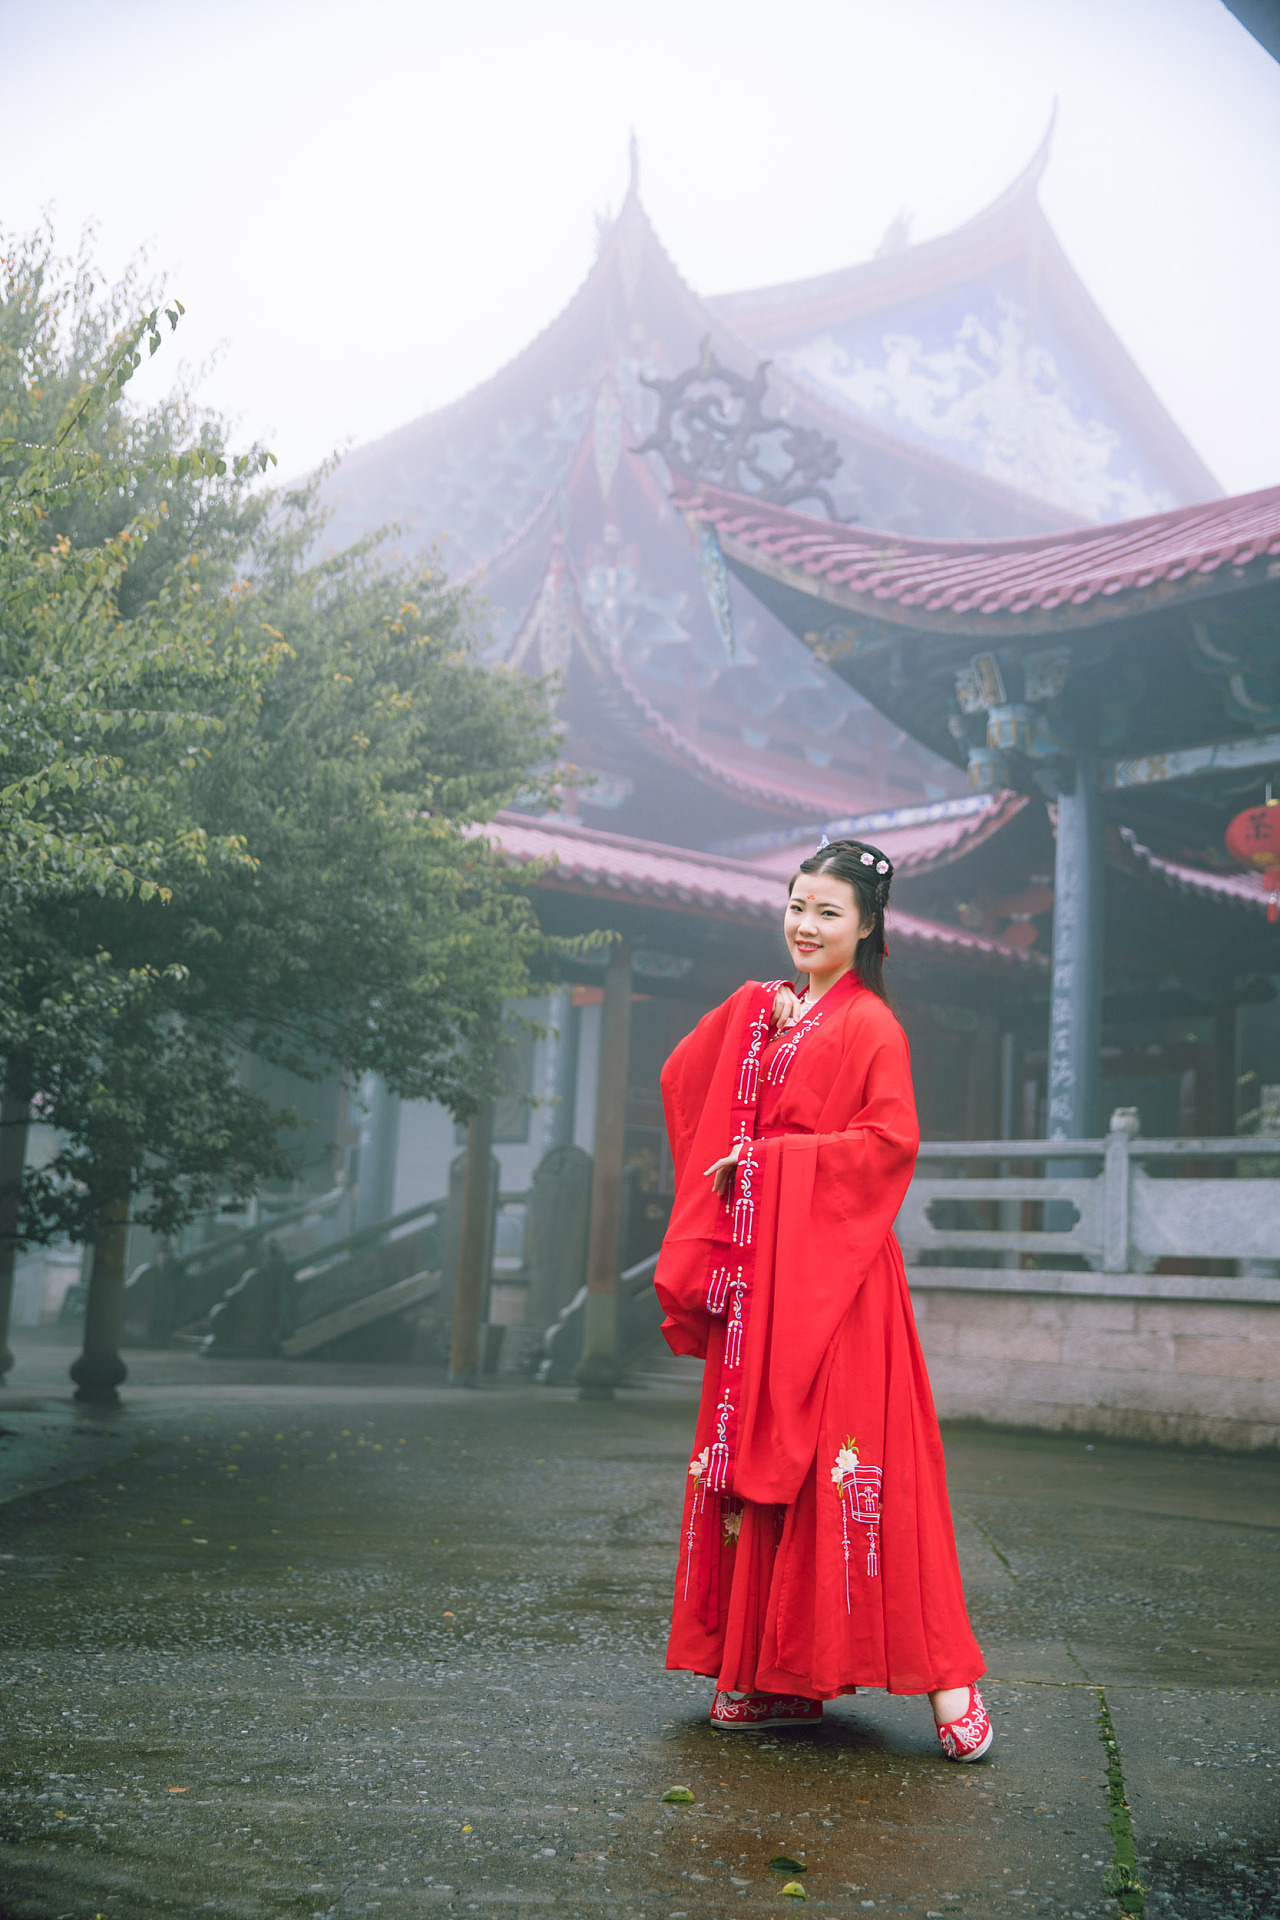 中国寺庙美女和背景 库存照片. 图片 包括有 背包, 汉语, 寺庙, 祈祷, 聚会所, 样式, 照片, 纵向 - 133679838